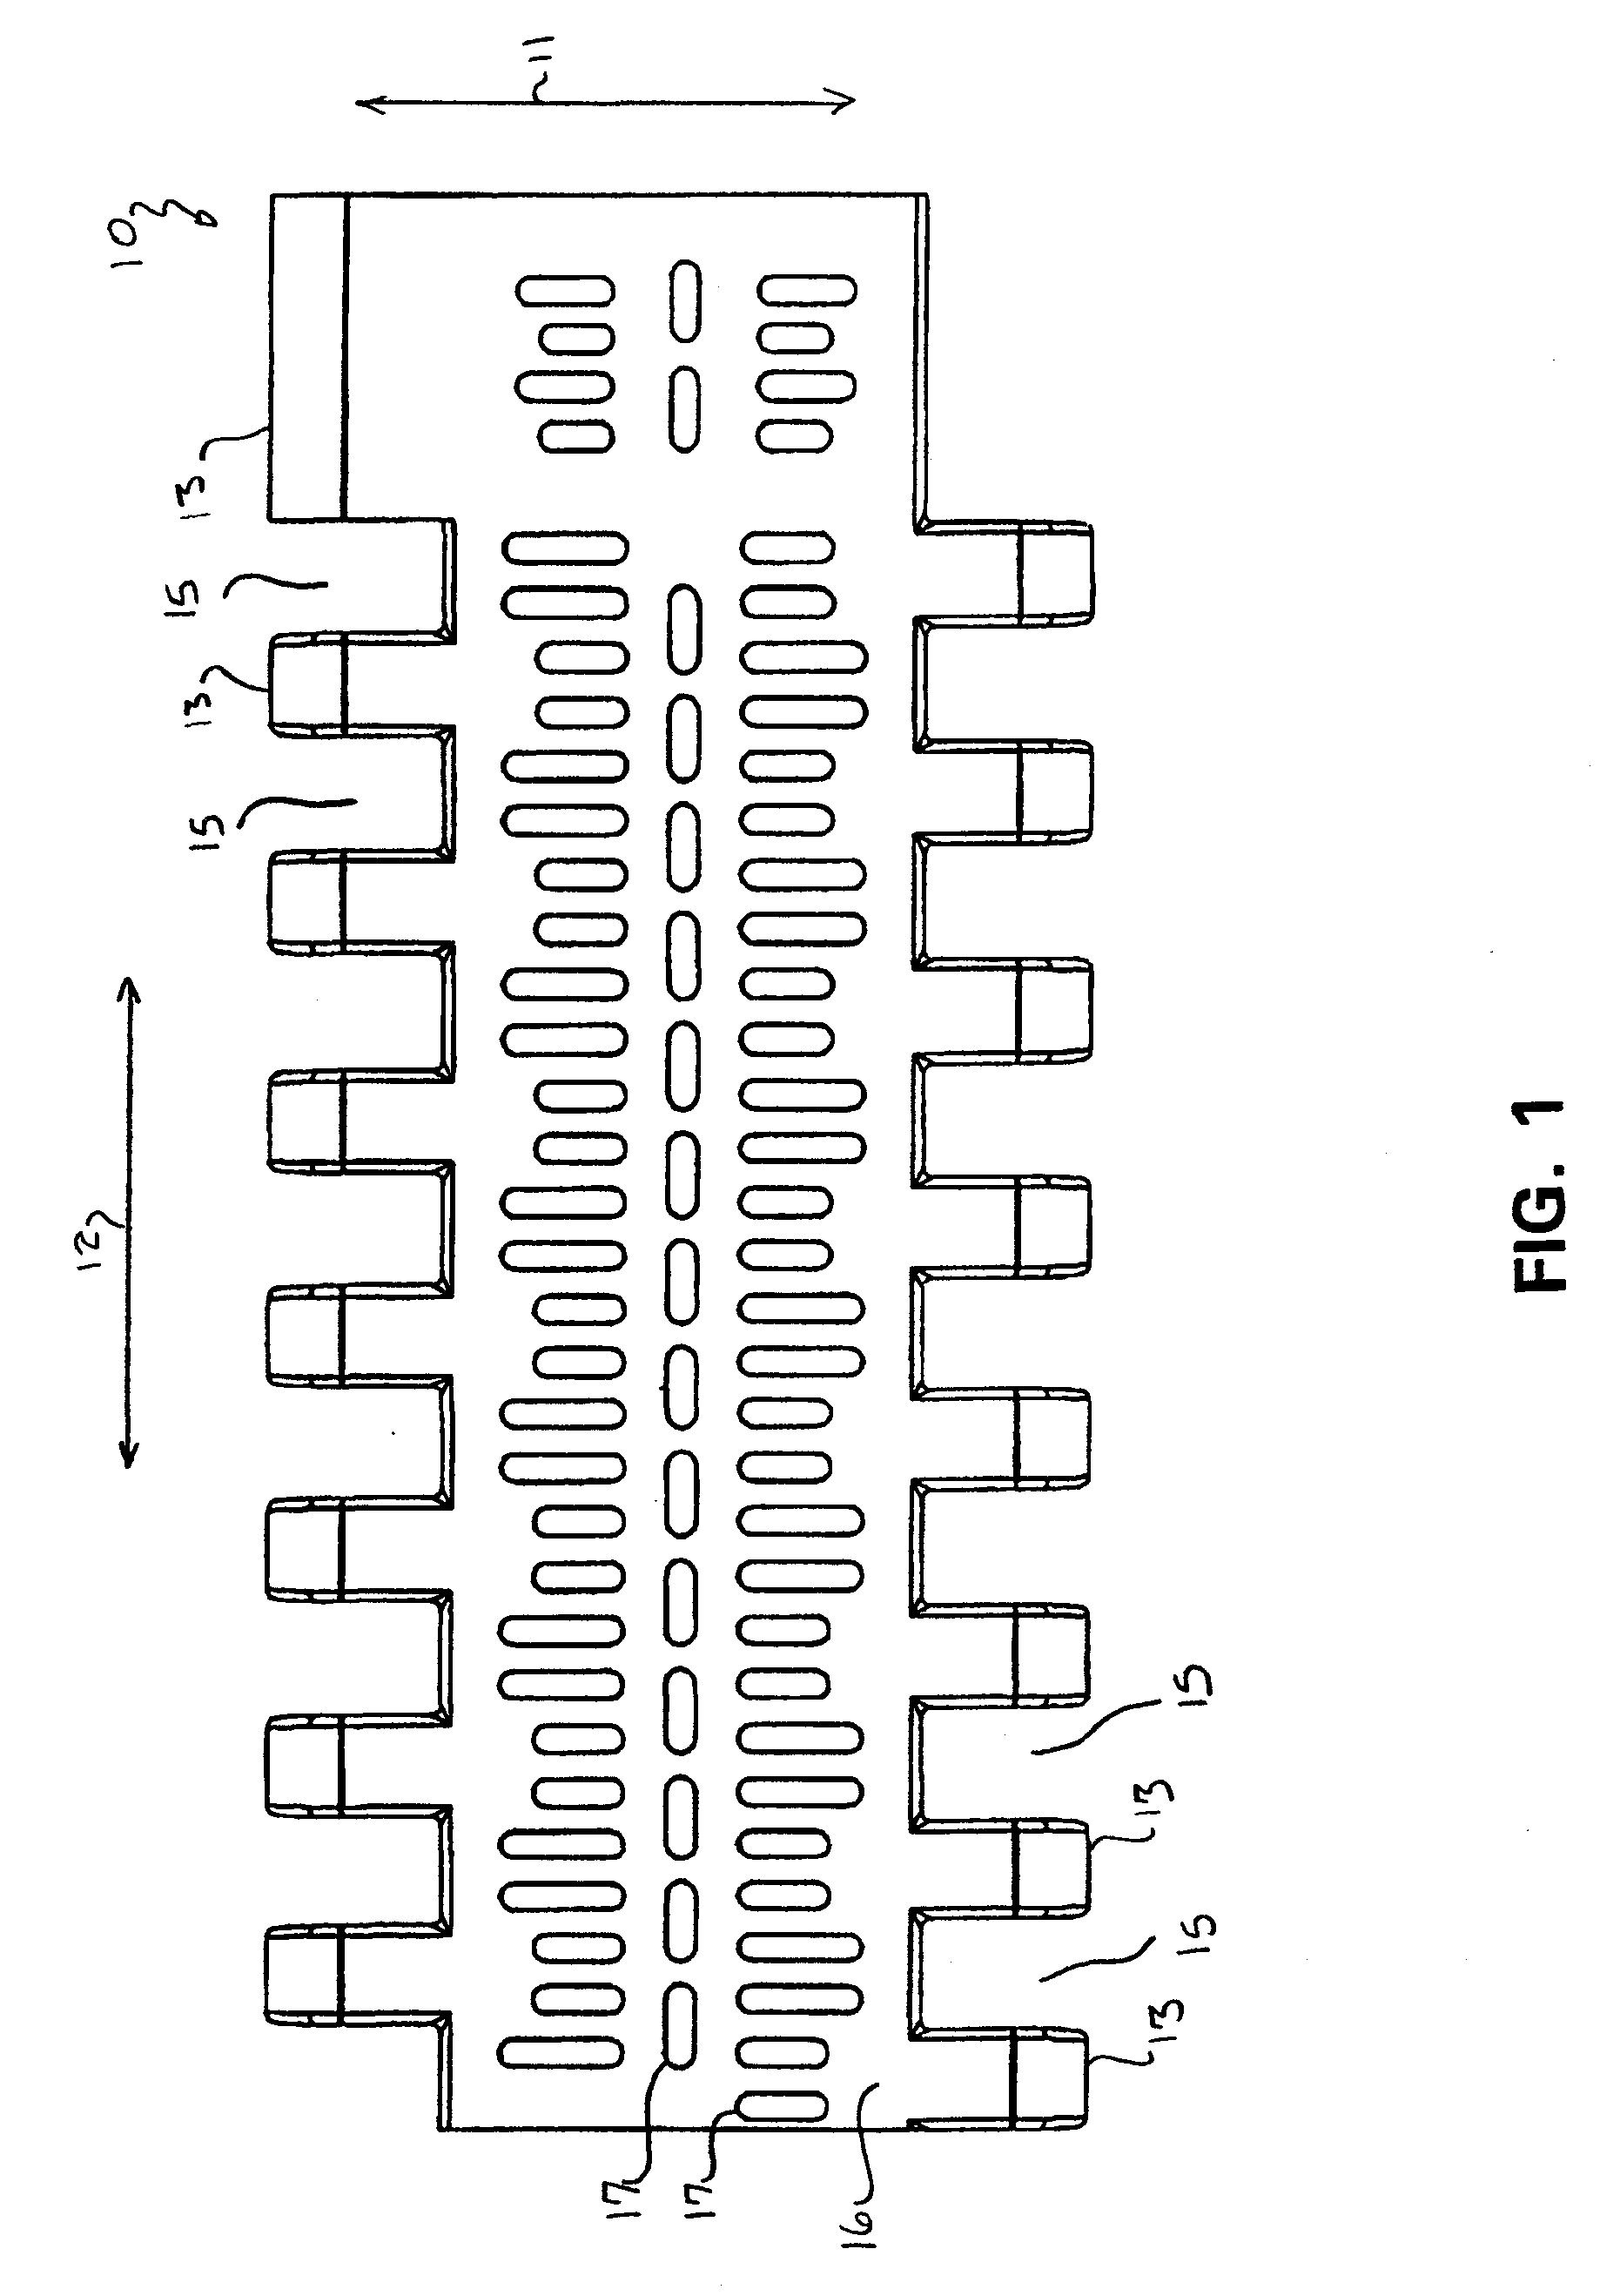 Module for a modular conveyor belt